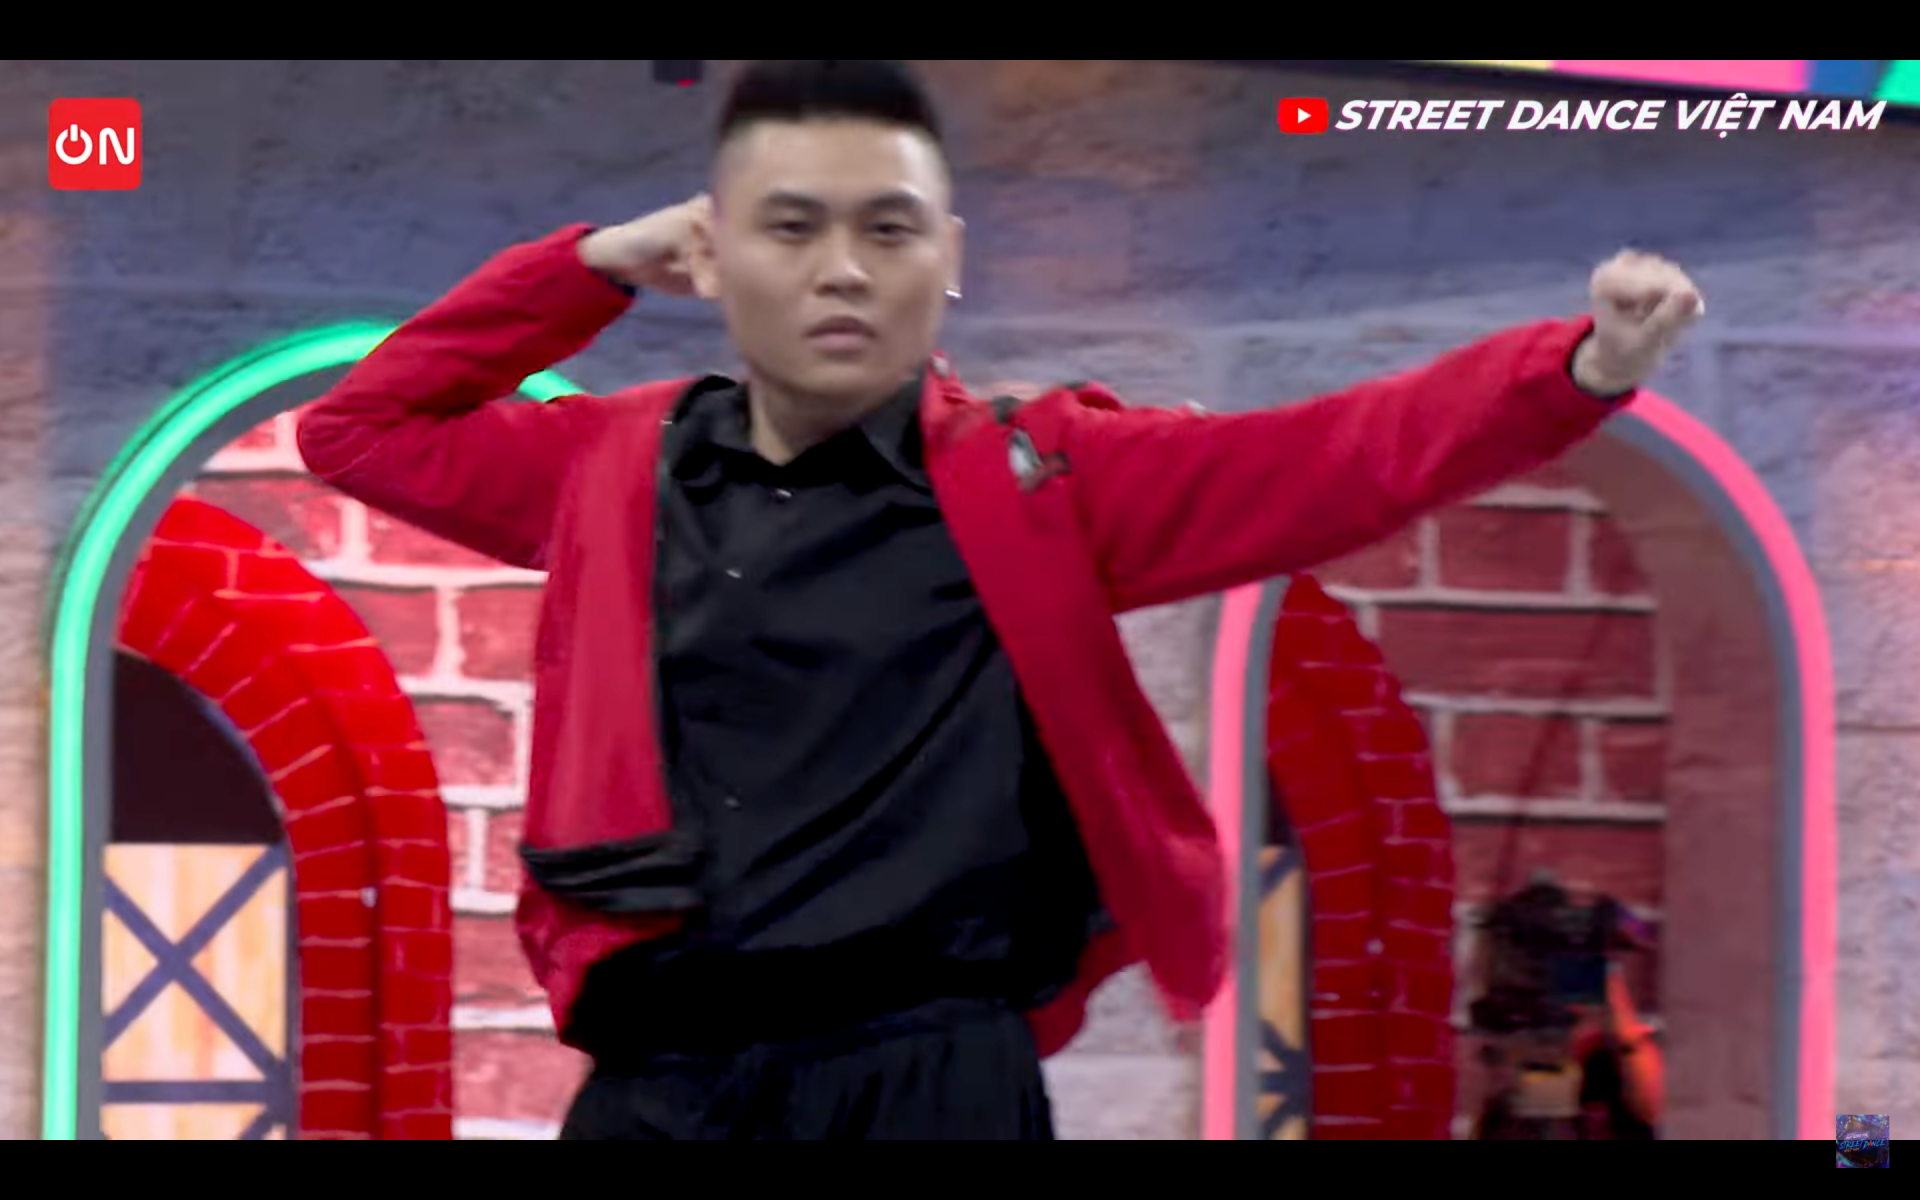 Tuyển thủ nhảy trên nền nhạc Trịnh khiến cả Trấn Thành, Chi Pu rơi nước mắt tại Street Dance Vietnam - Ảnh 1